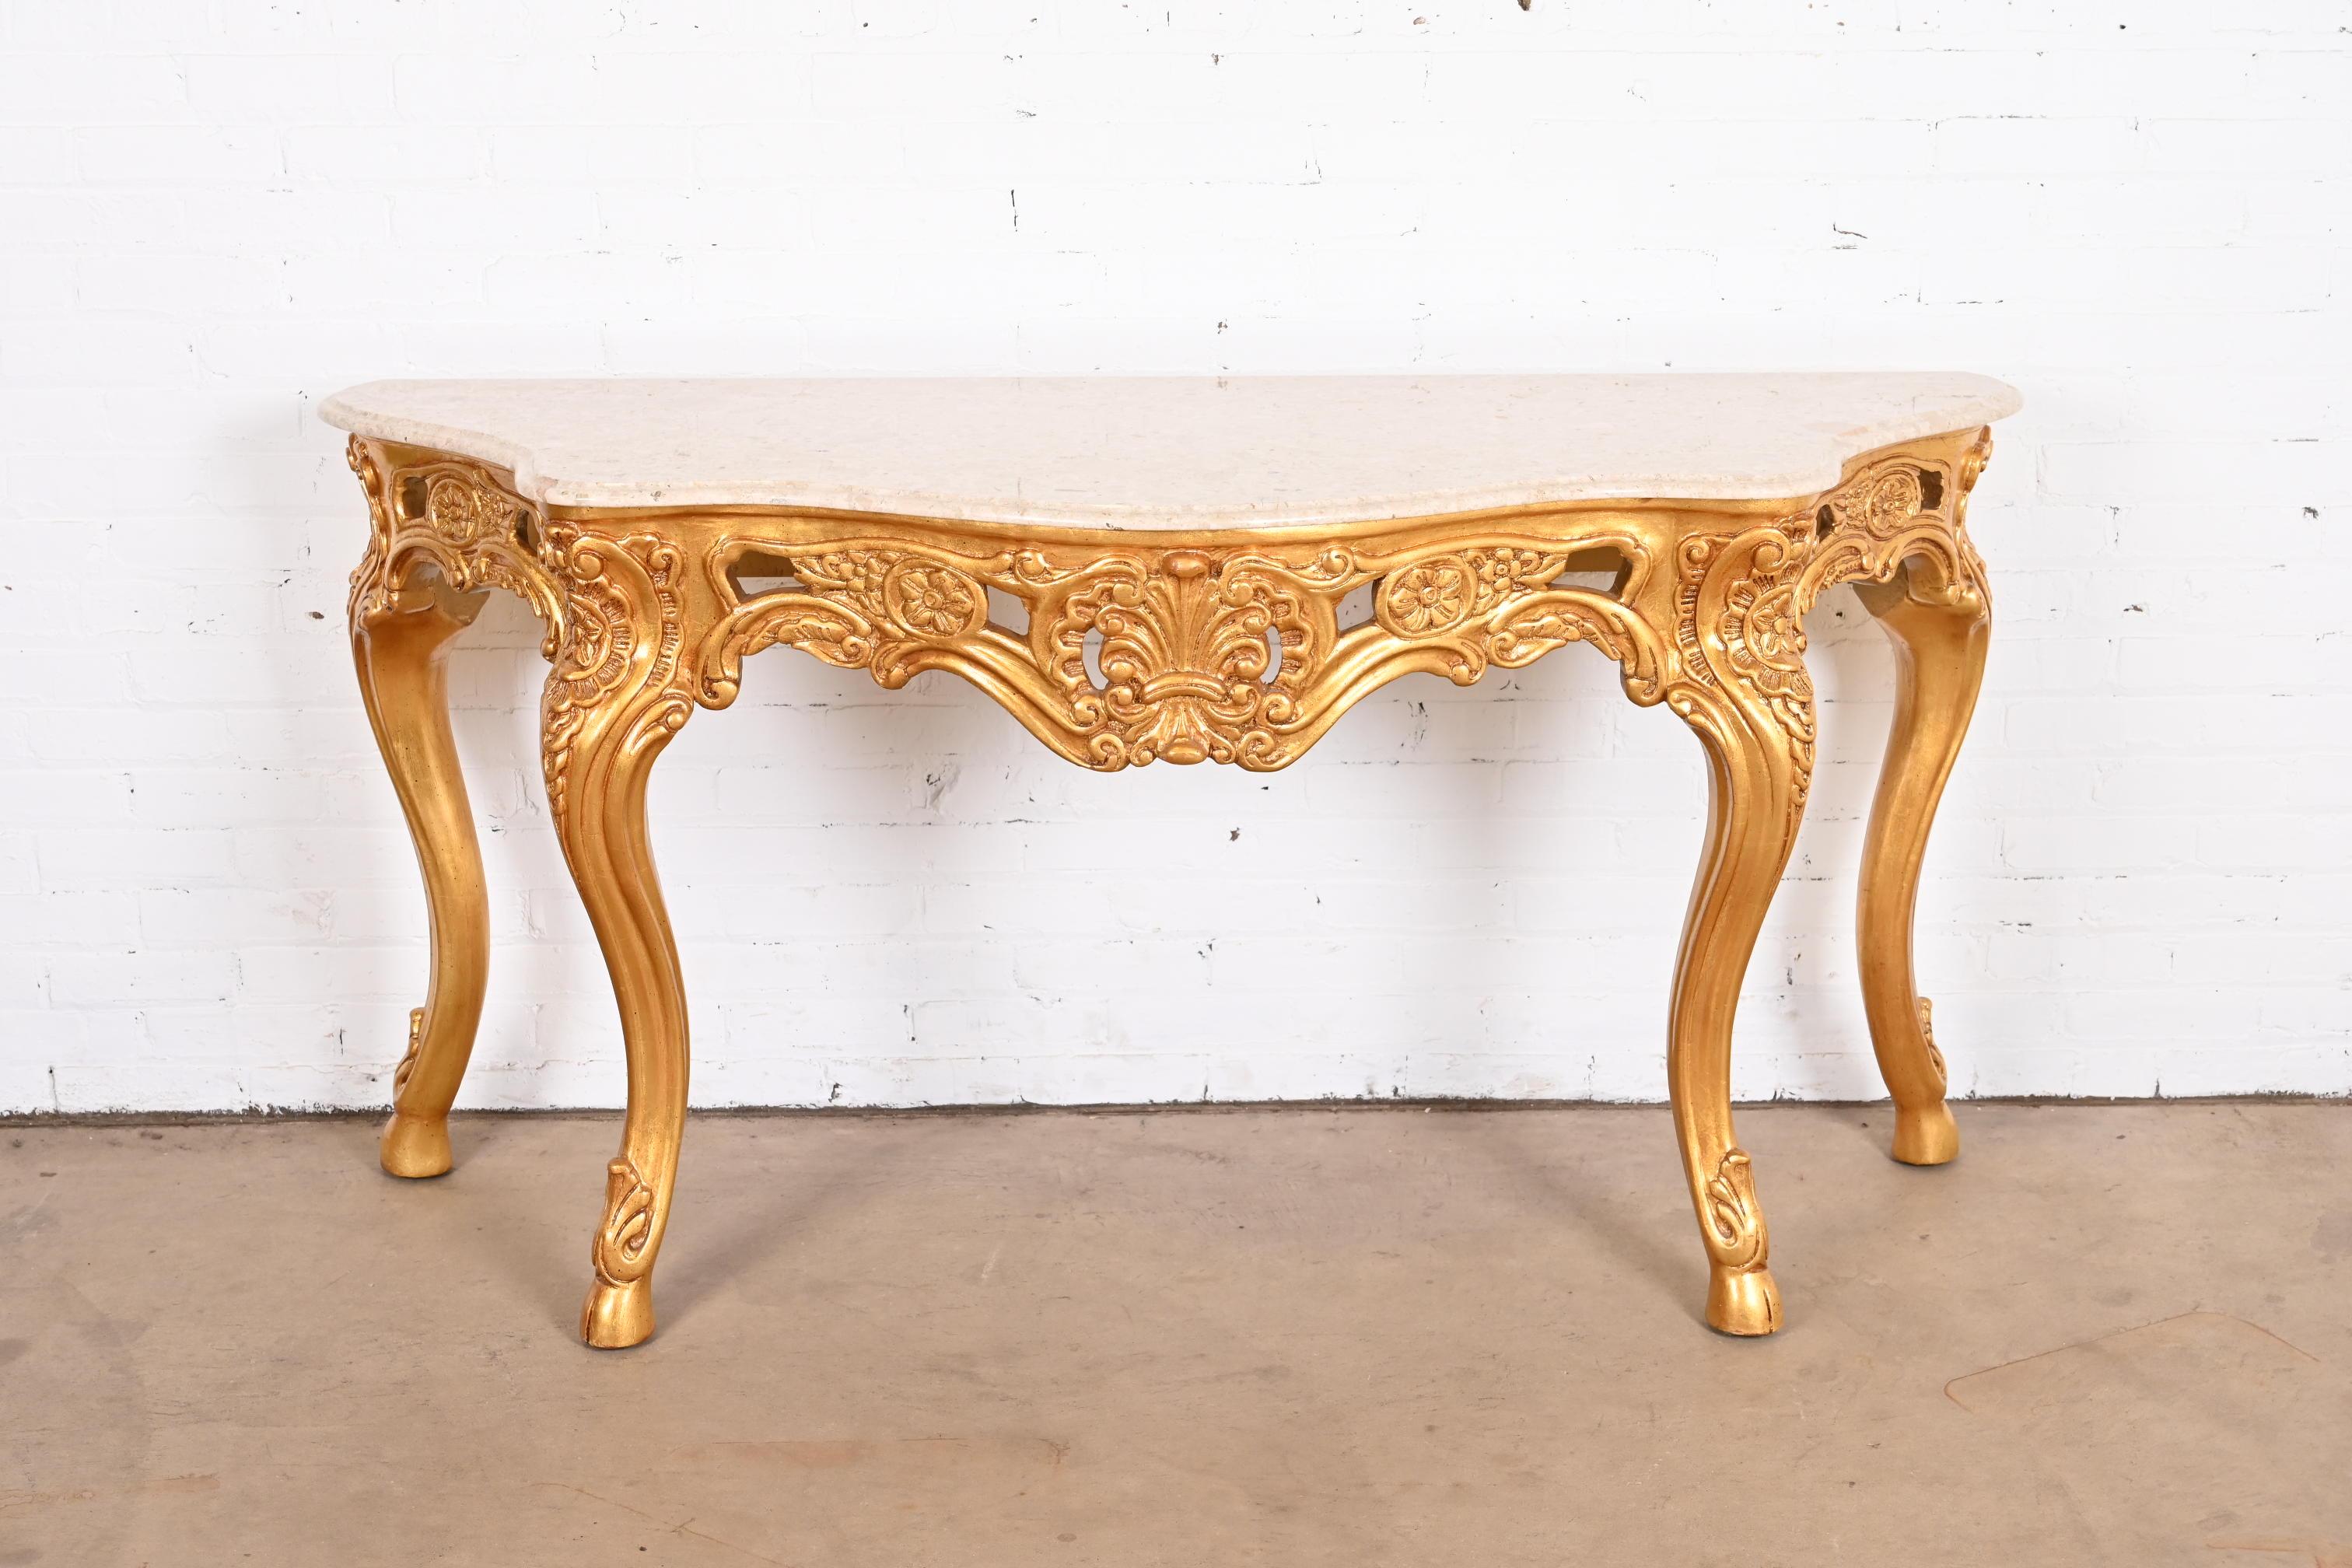 Magnifique console ou table d'entrée de style baroque ou rococo français

Fin du 20e siècle

Bois doré sculpté, avec plateau en marbre beige.

Mesures : 67.25 